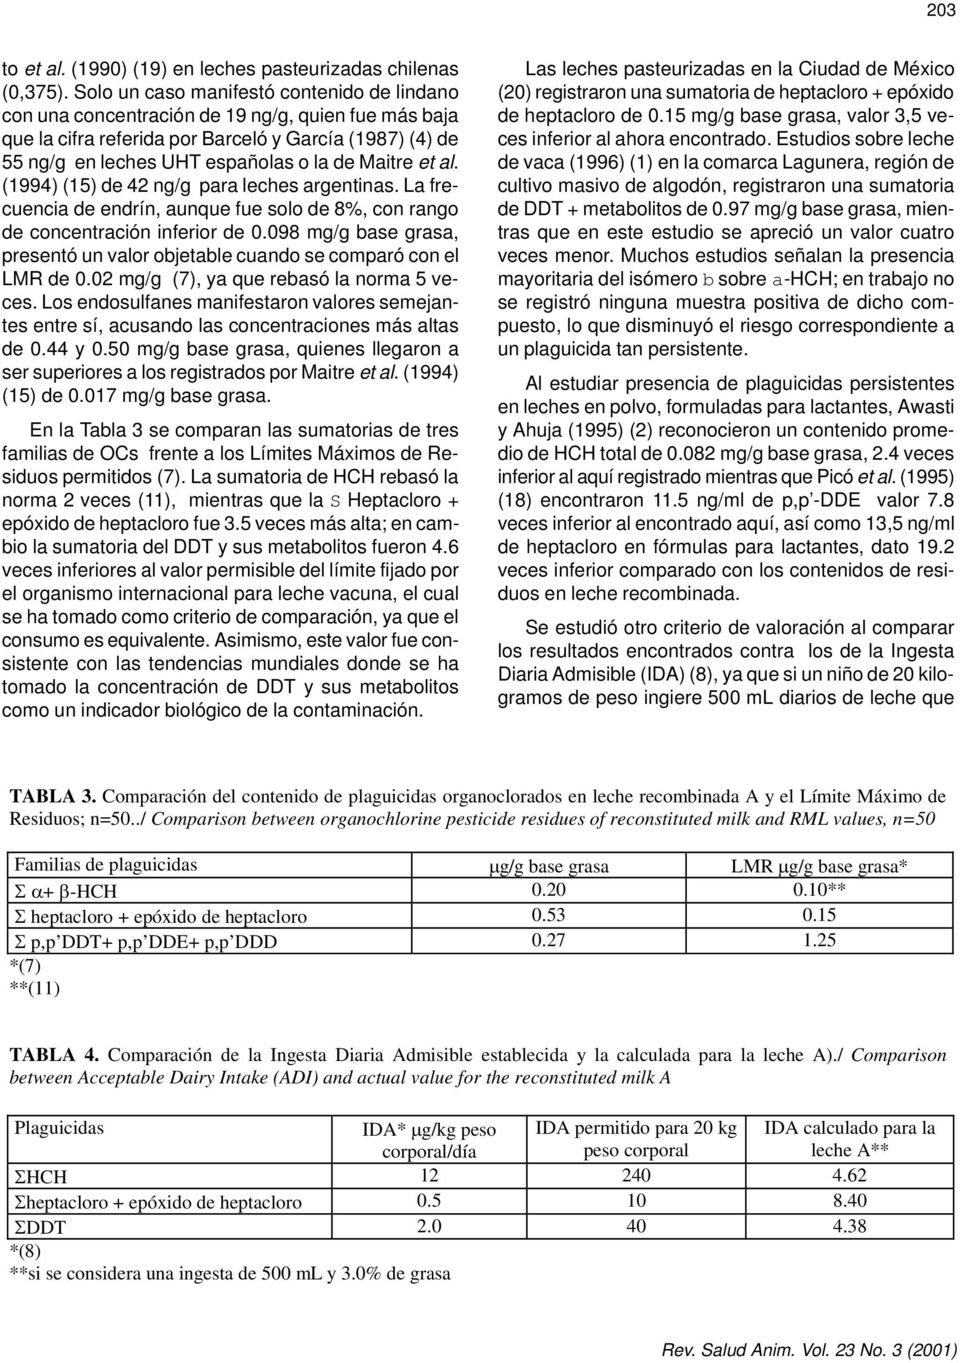 Maitre et al. (1994) (15) de 42 ng/g para leches argentinas. La frecuencia de endrín, aunque fue solo de 8%, con rango de concentración inferior de 0.